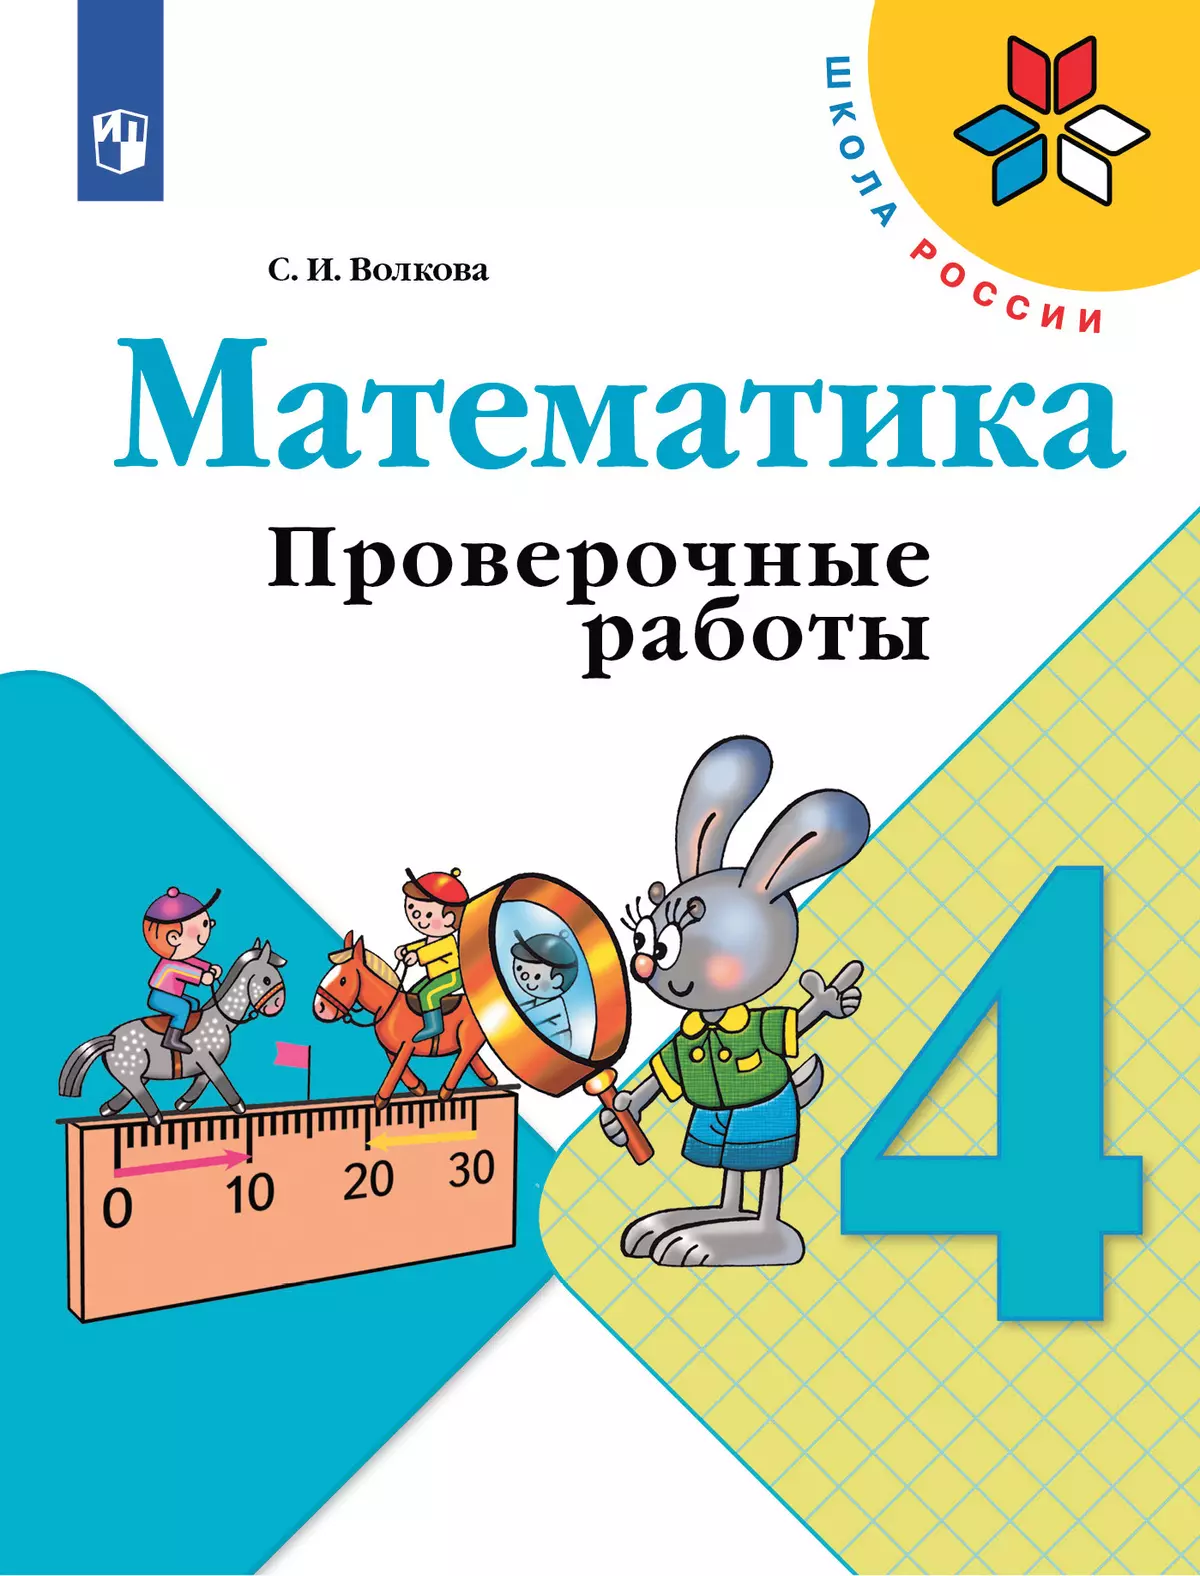 Сборники заданий по математике А.Ф. Грецкой